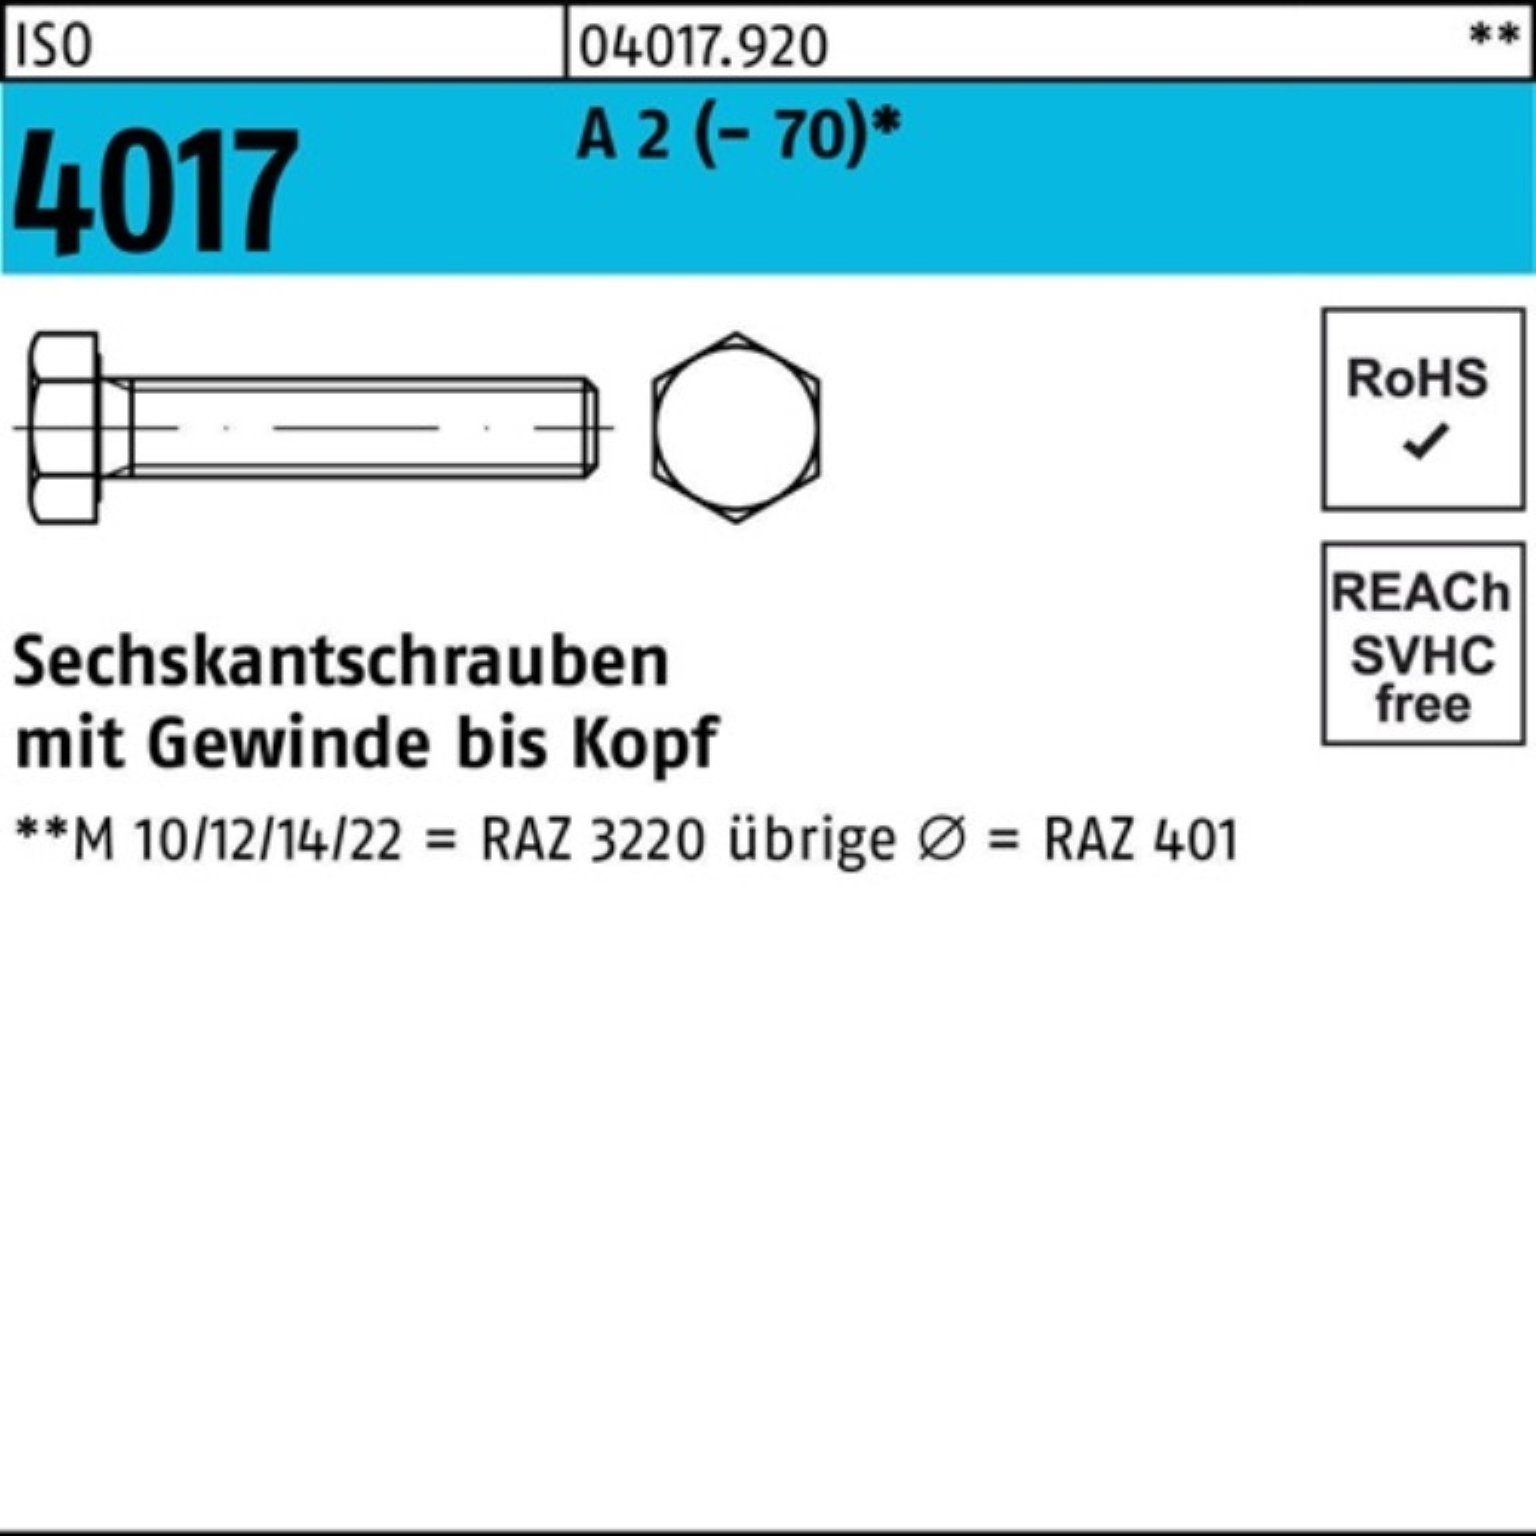 Bufab Sechskantschraube 100er Pack Sechskantschraube ISO 4017 VG M14x 40 A 2 (70) 50 Stück